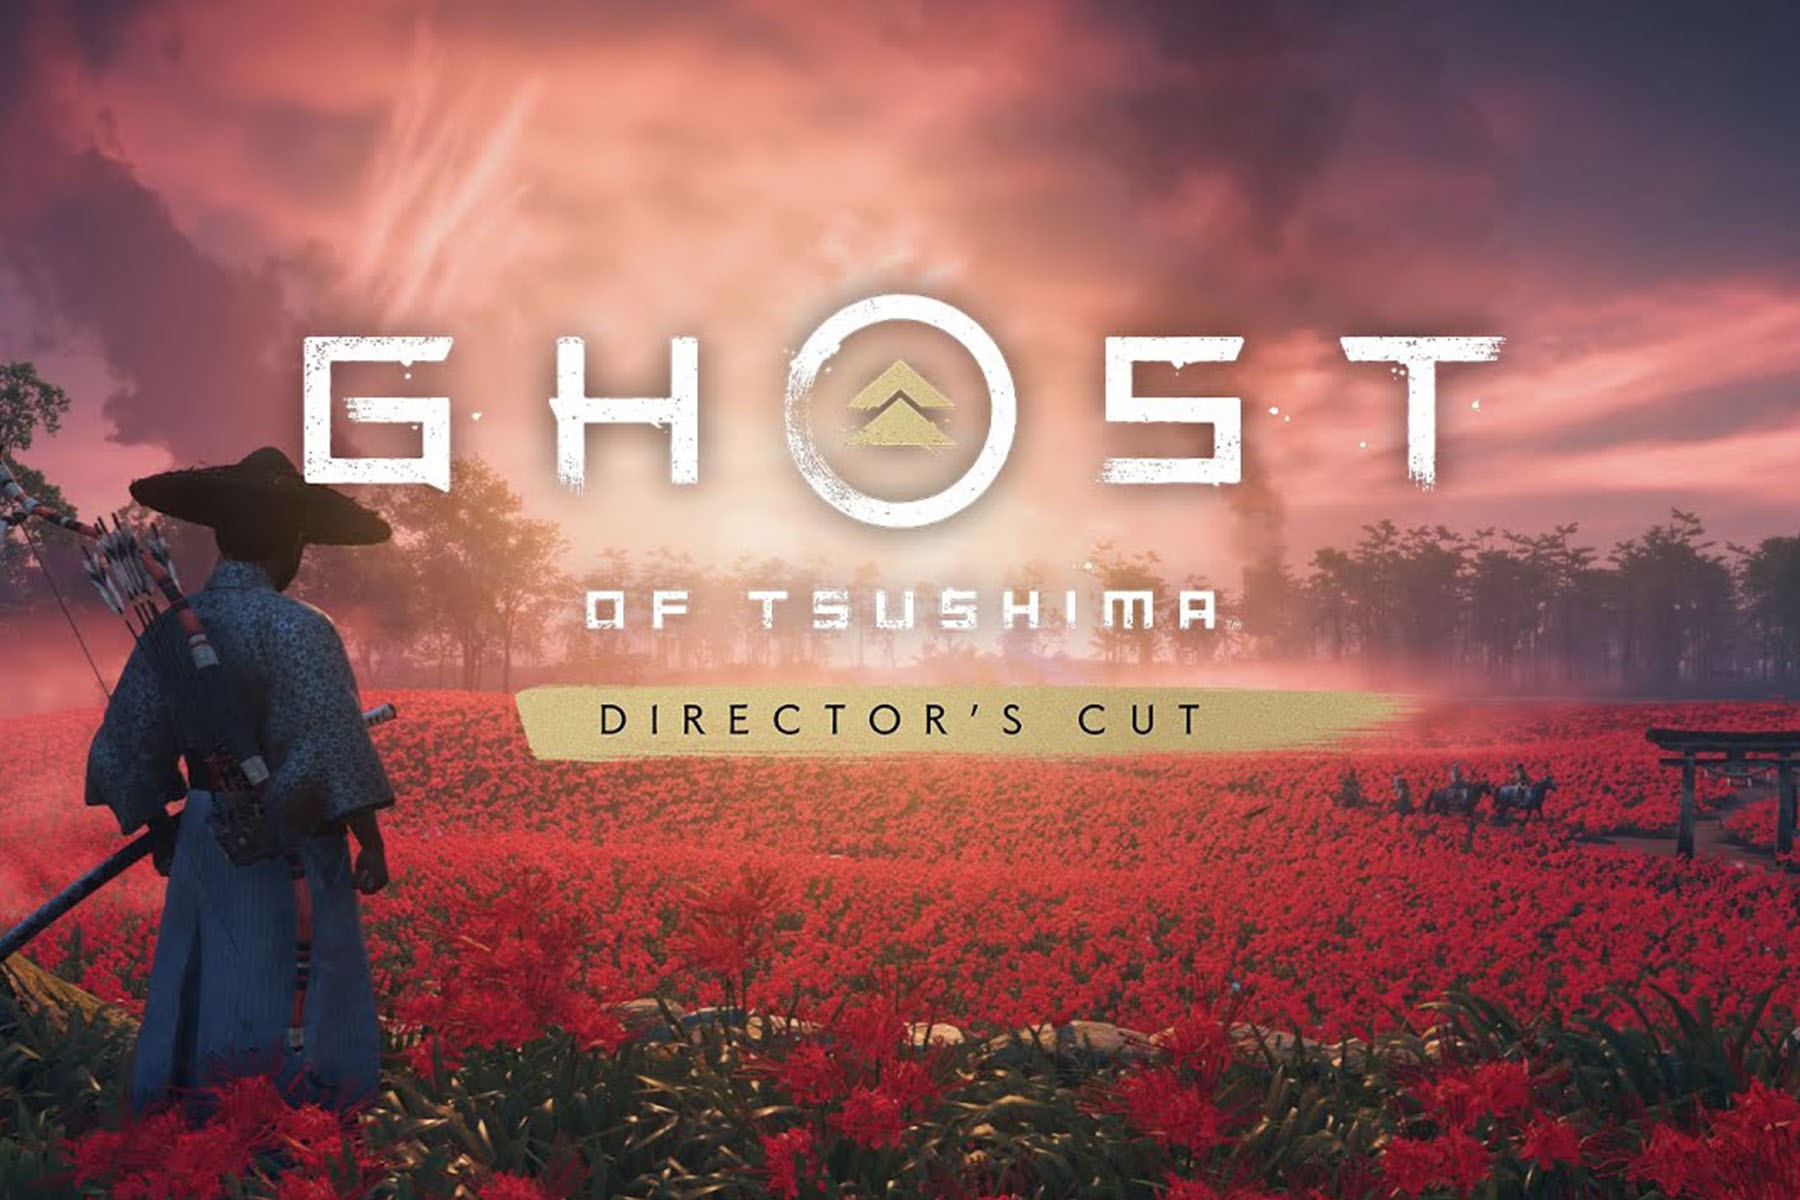 人气游戏《对马战鬼 Ghost of Tsushima》即将发布全新「导演剪辑版」